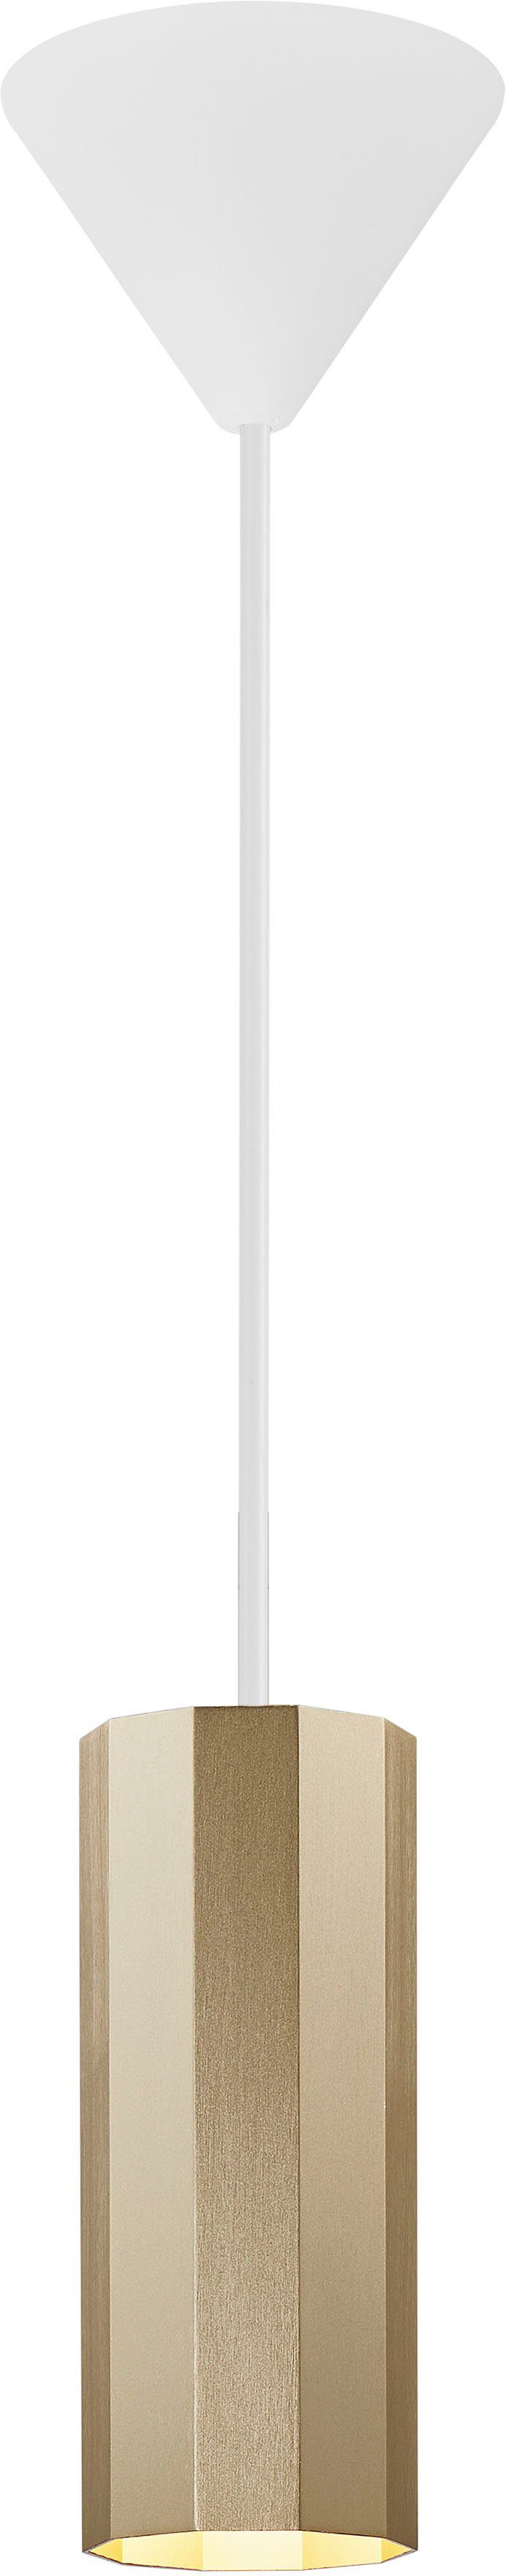 Nordlux Pendelleuchte Alanis, ohne Leuchtmittel, Minimalistisches Design, 10-seitiges Profil, matt-schwarz | Pendelleuchten